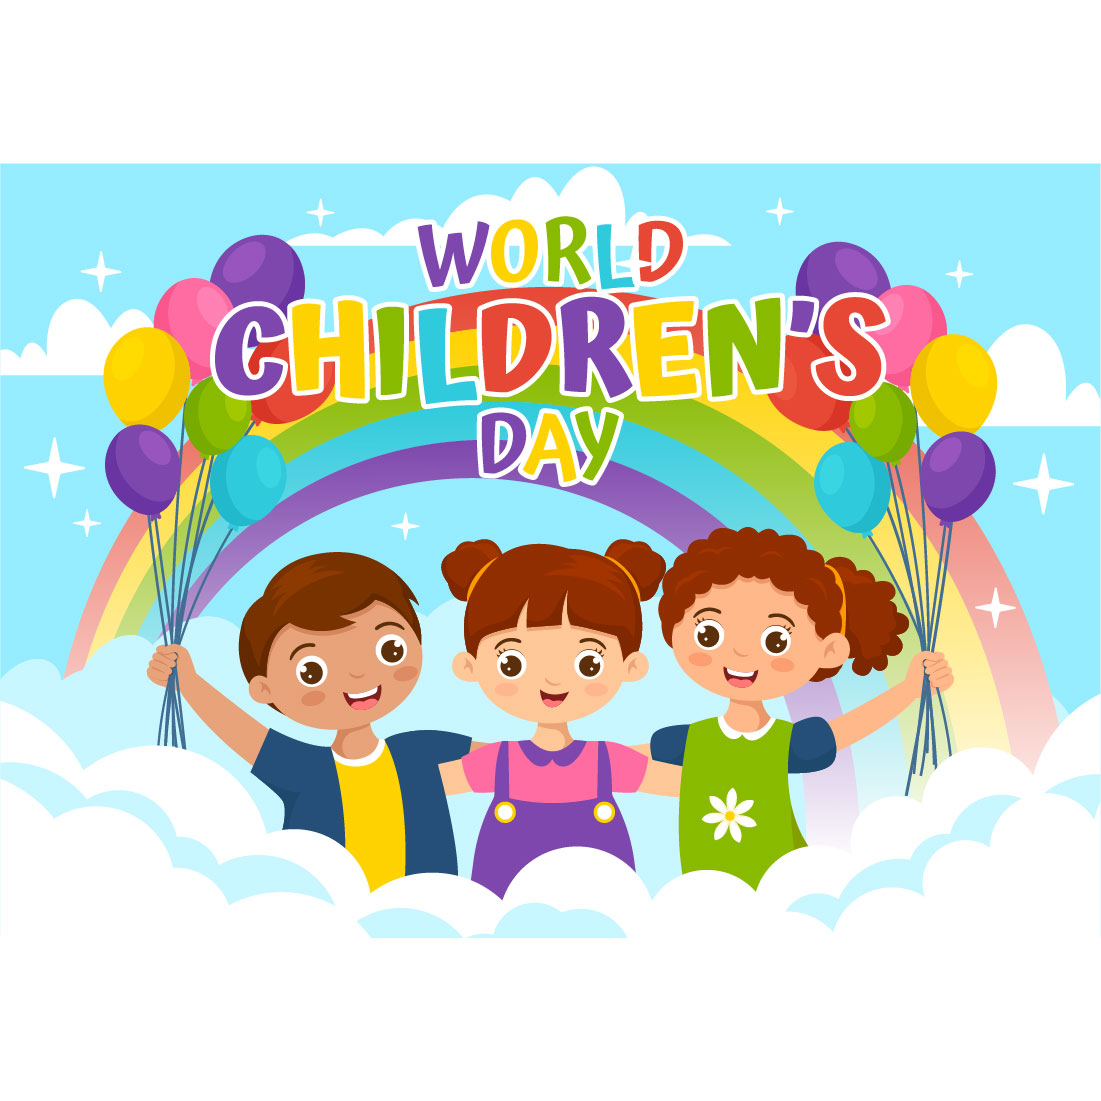 14 World Children's Day Illustration cover image.